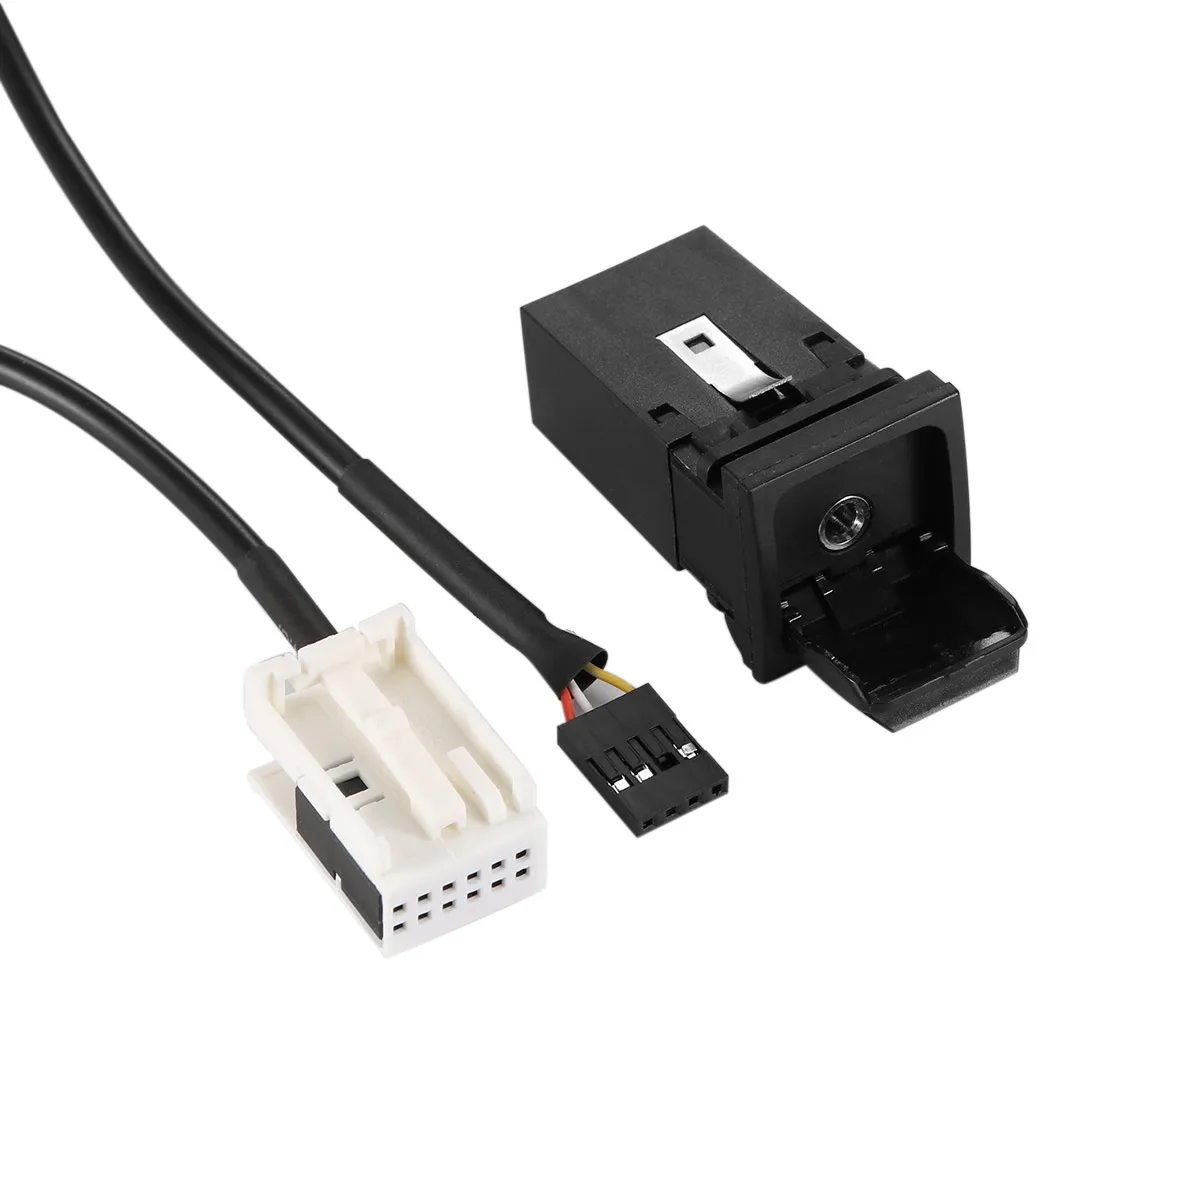 Черный usb-кабель для переключателя AUX кабель Премиум соединительная линия провода выключатель проводки кабель для VW RNS315 RCD510 Magotan L поло Touran